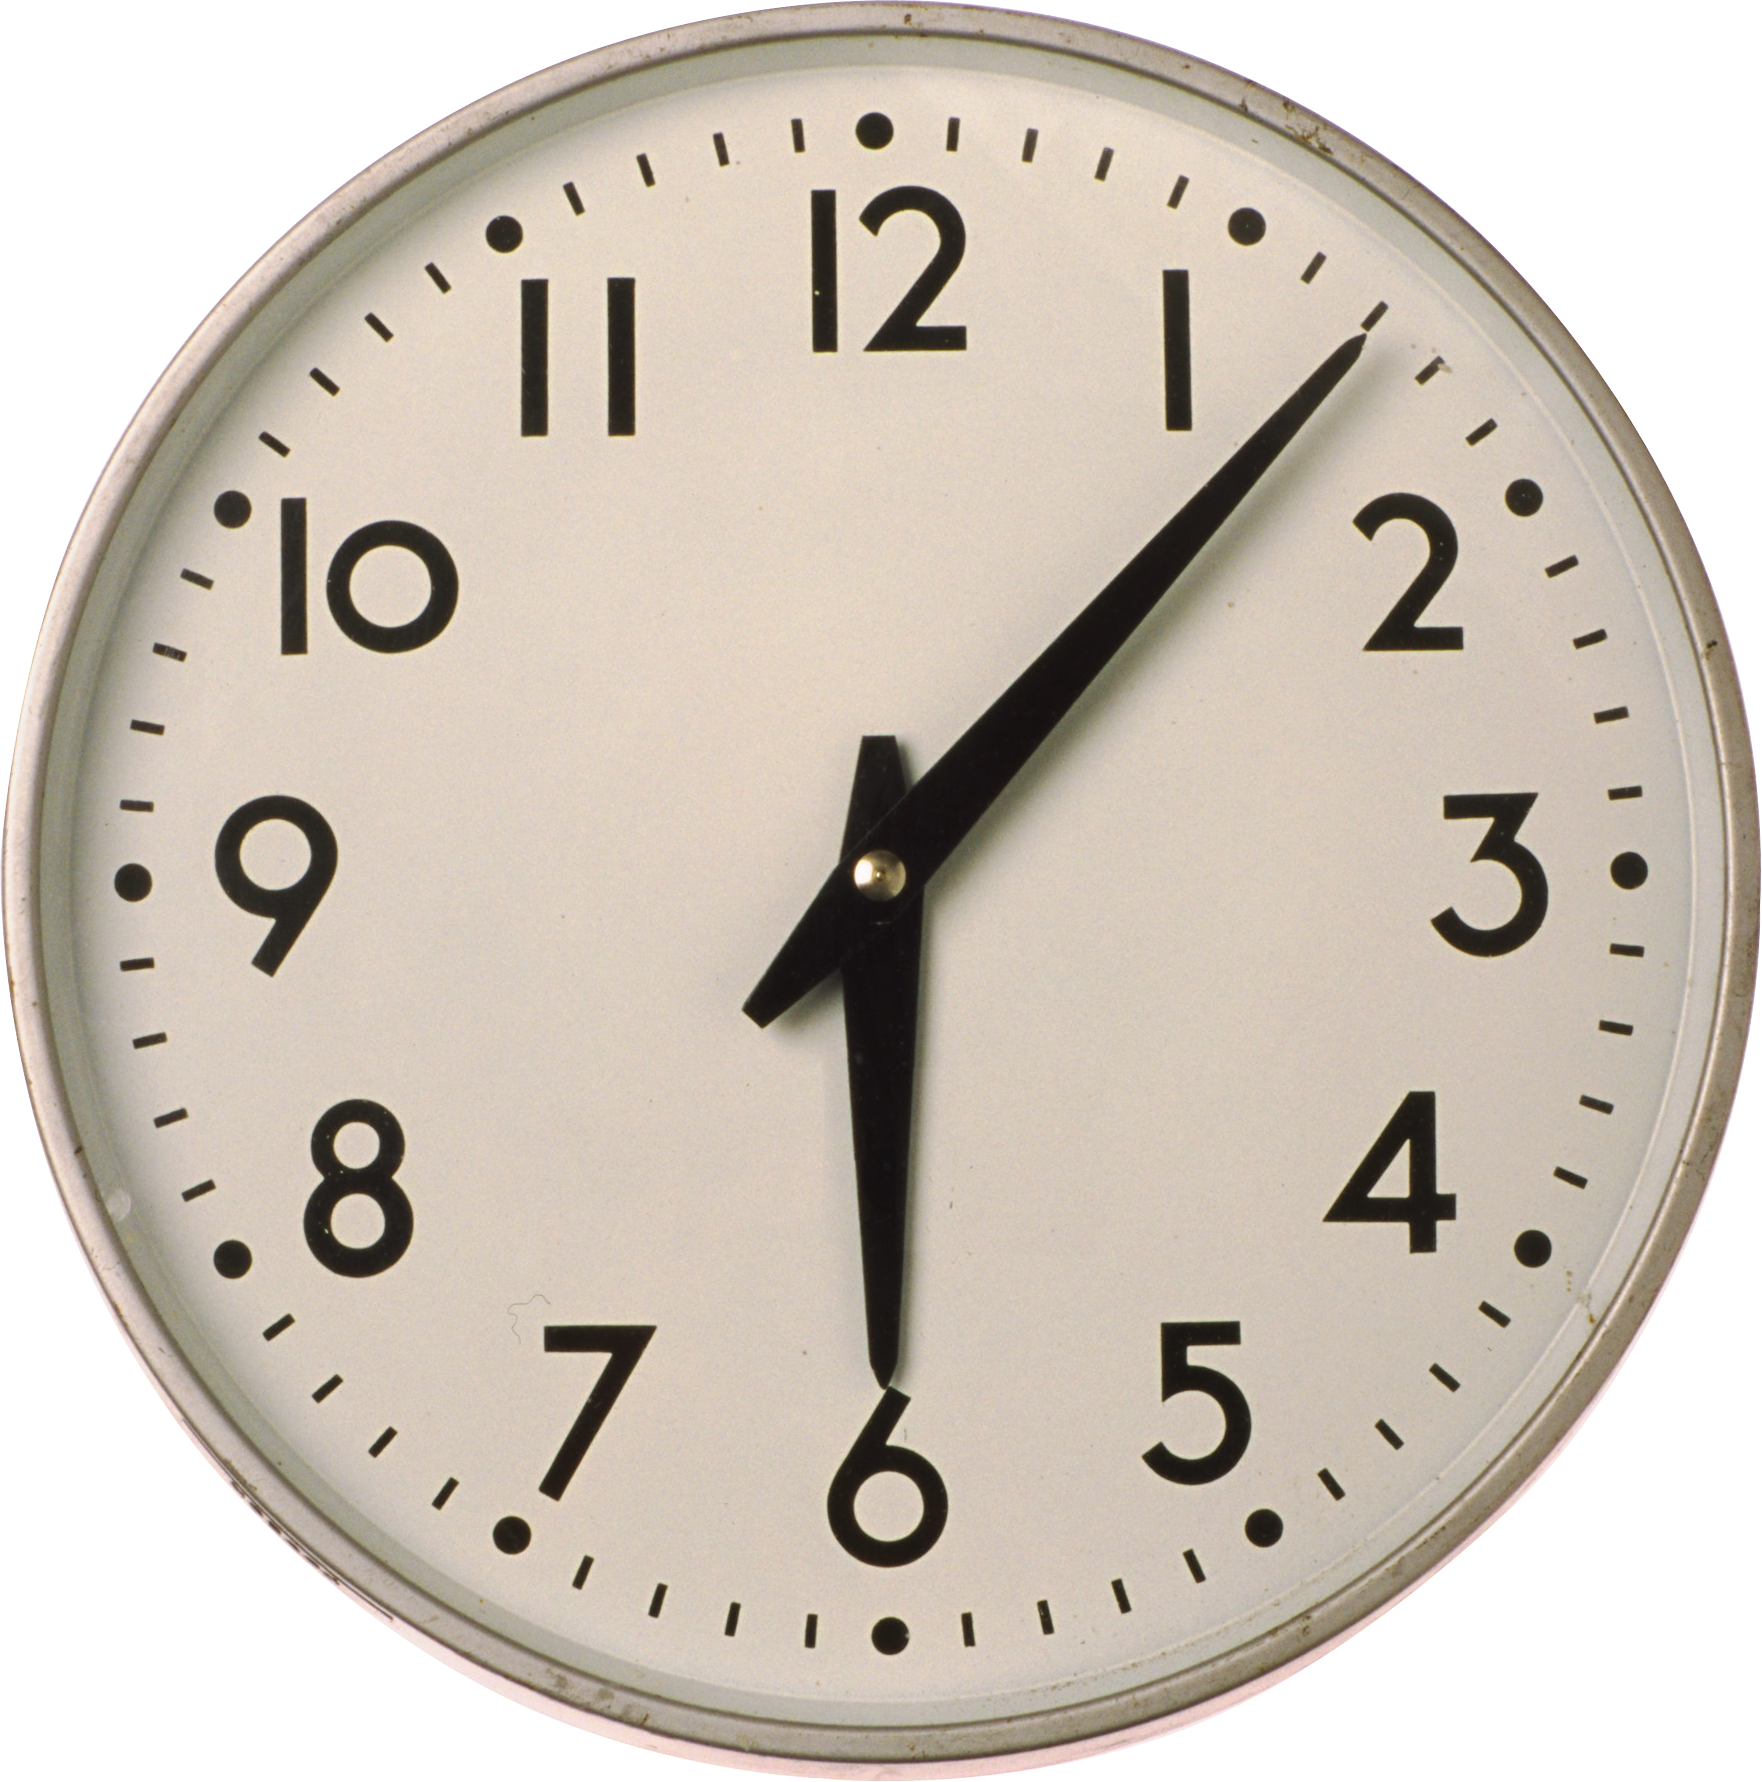 Vintage Clock PNG Transparent Background, Free Download #25765 ...